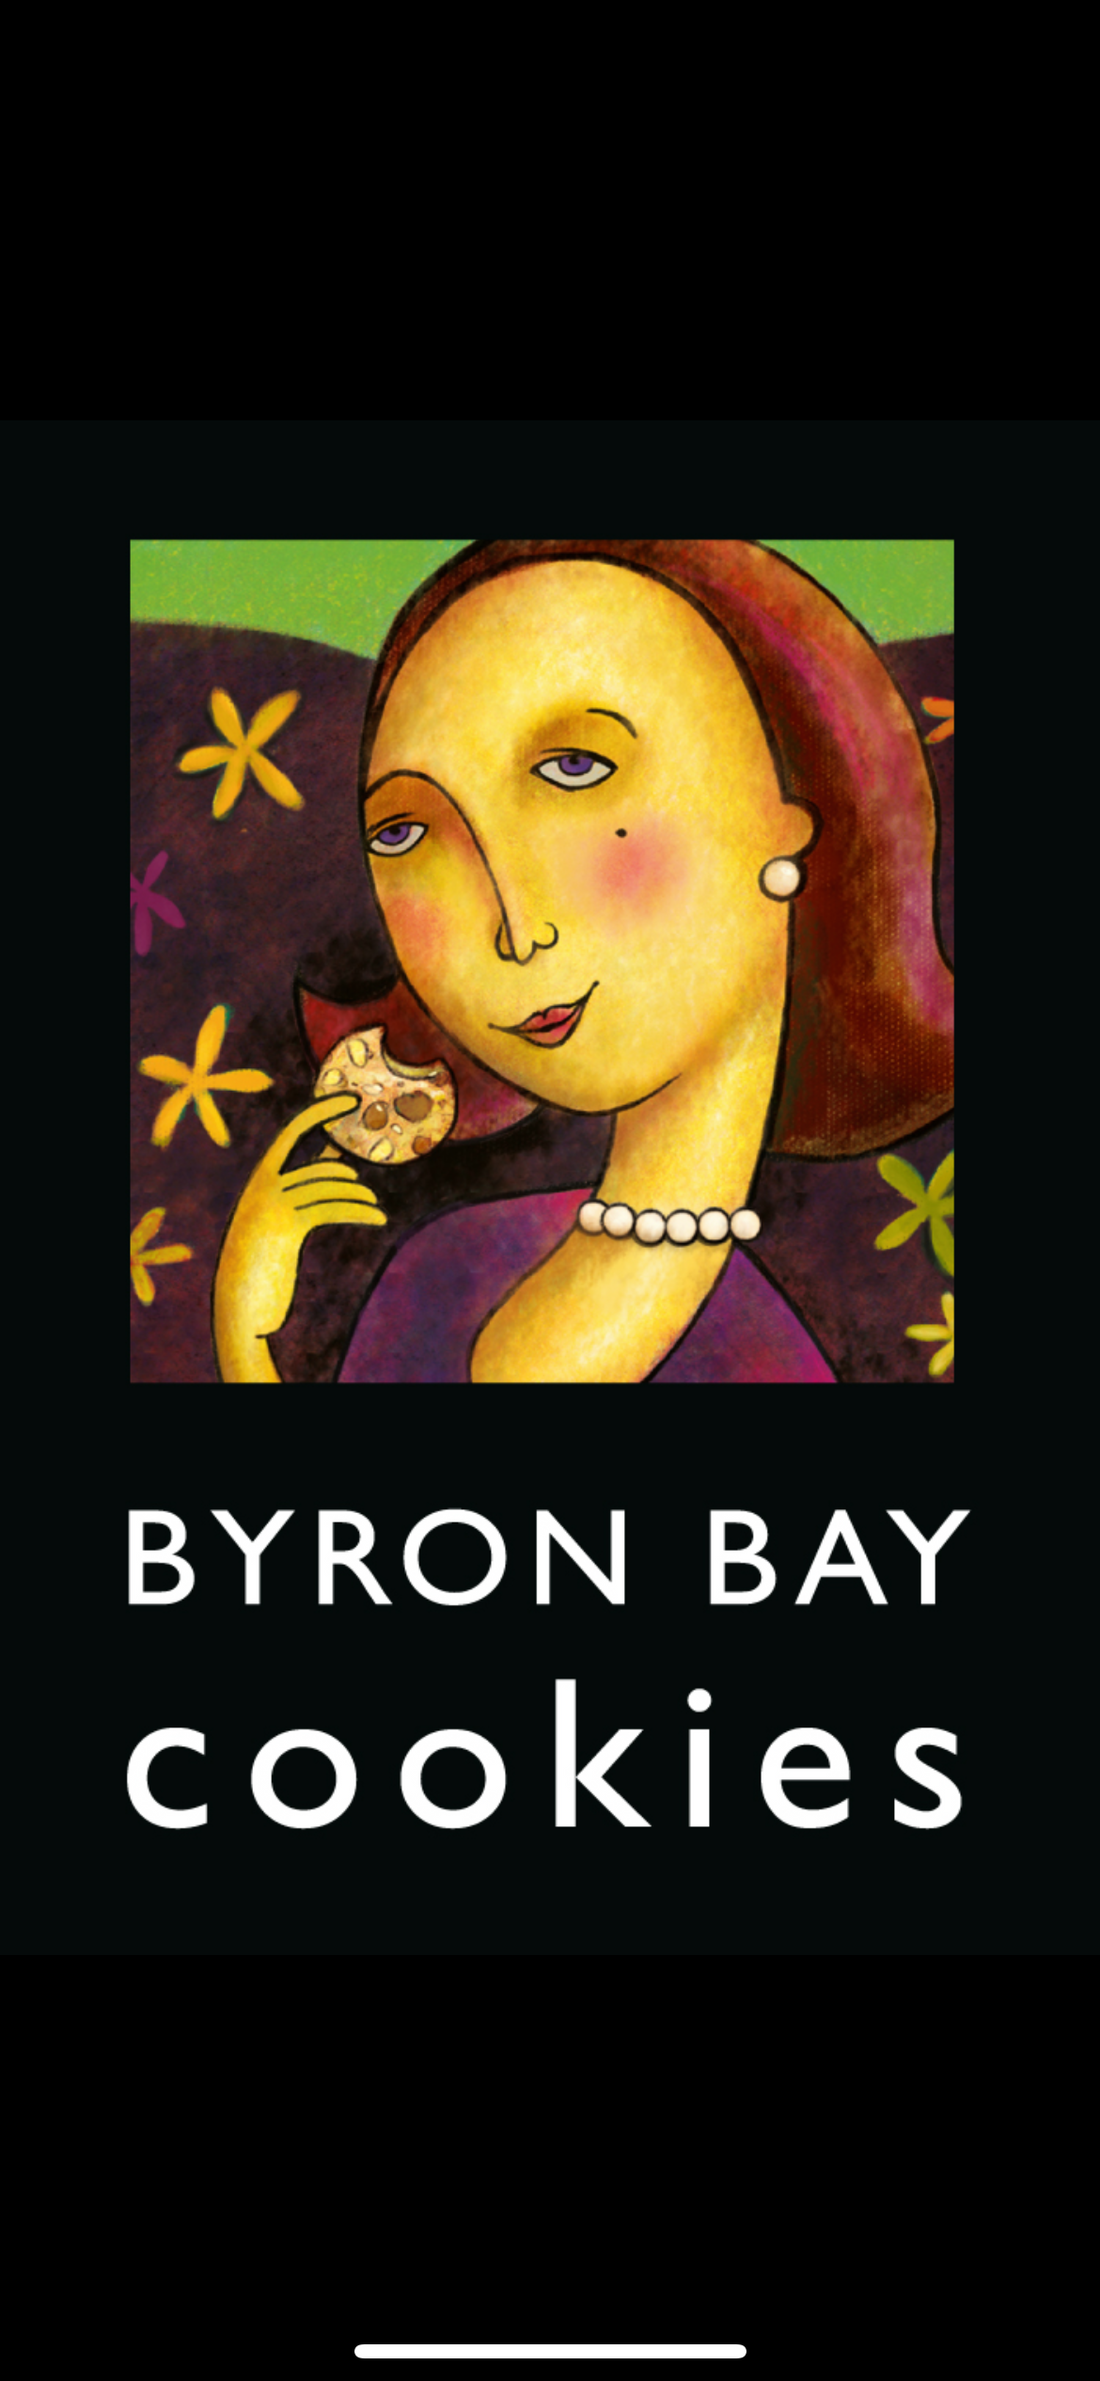 Byron Bay Cookies 価格変更のお知らせ🍪